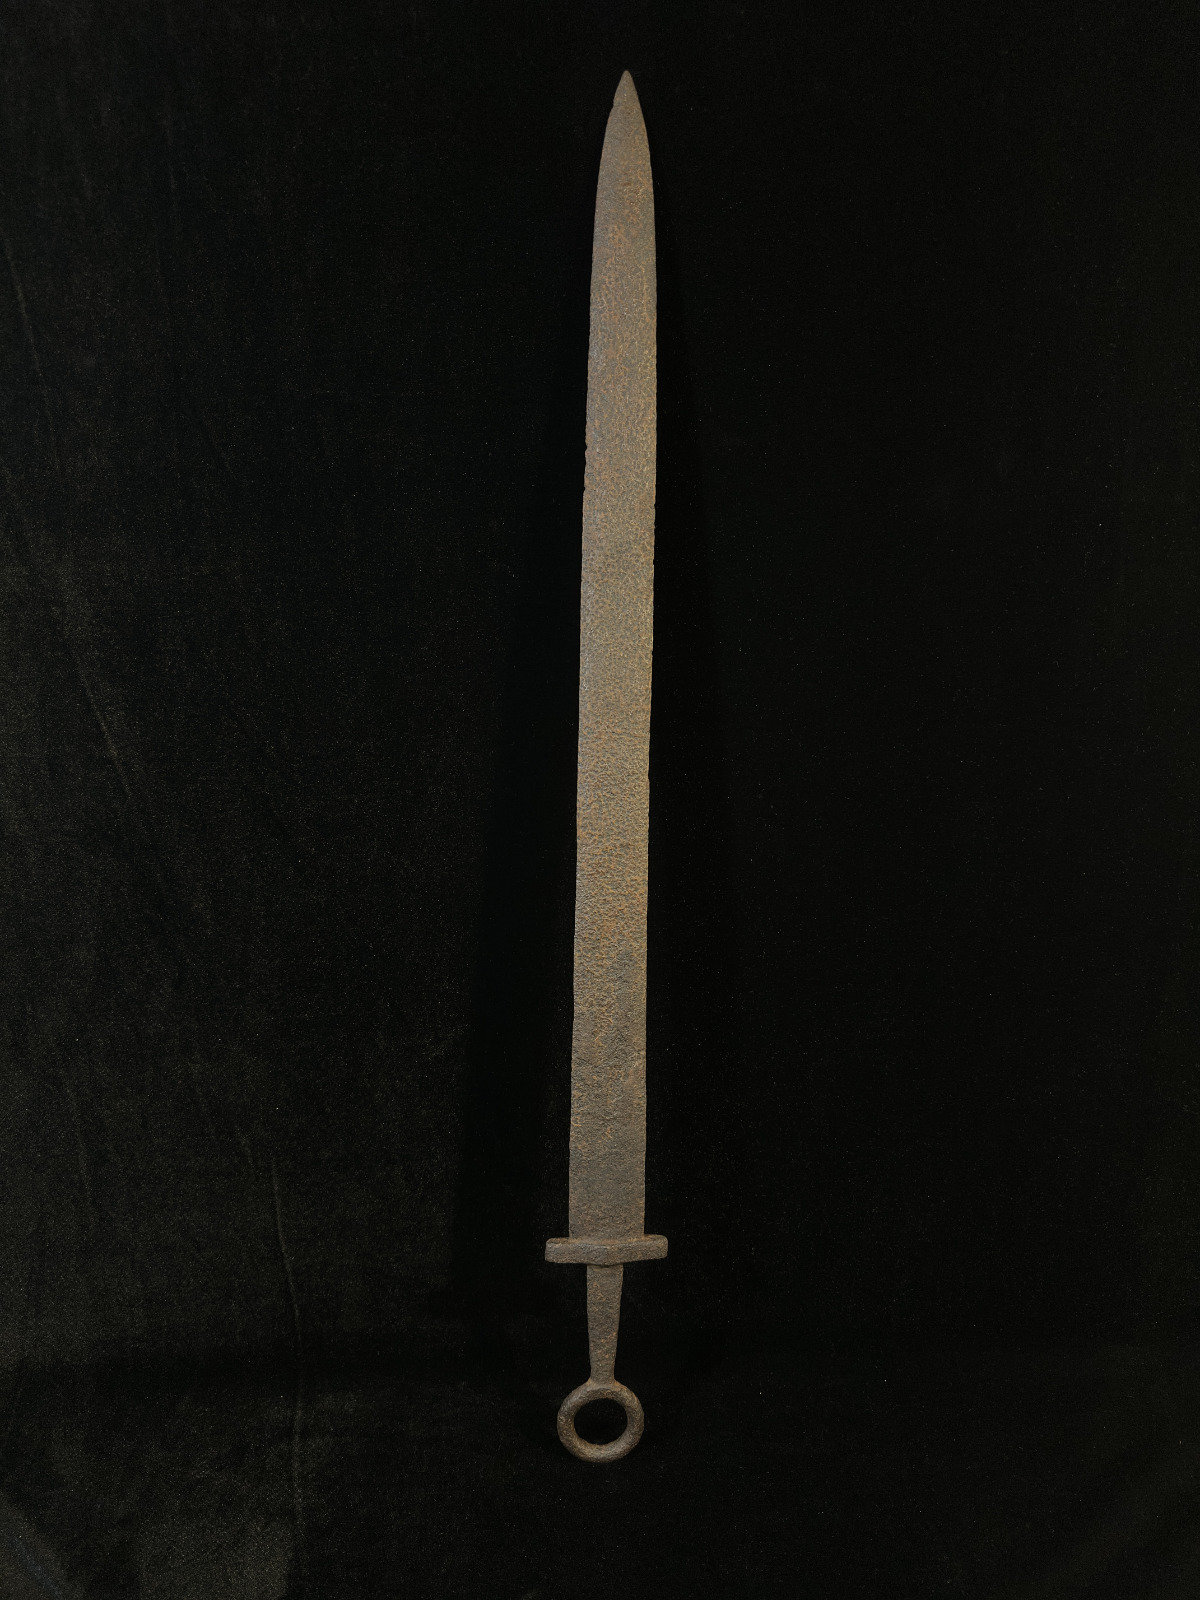 Sarmatian Sword circa 4th century AD.